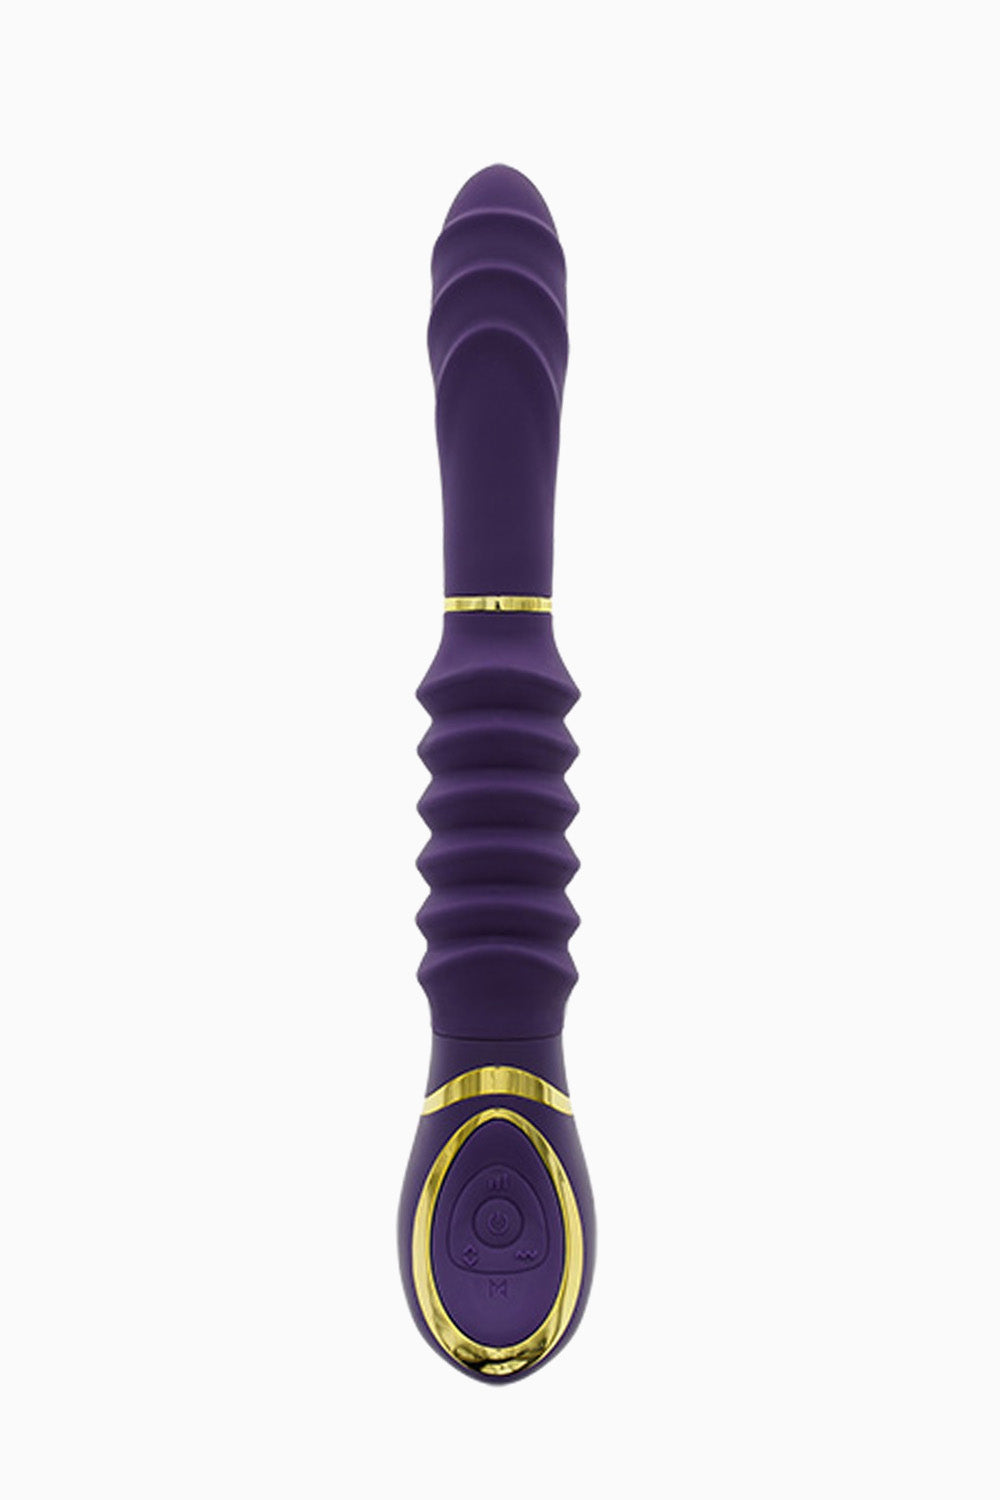 MiaMaxx MiaPasione Thrusting Vibrator Purple, 9.5 Inches